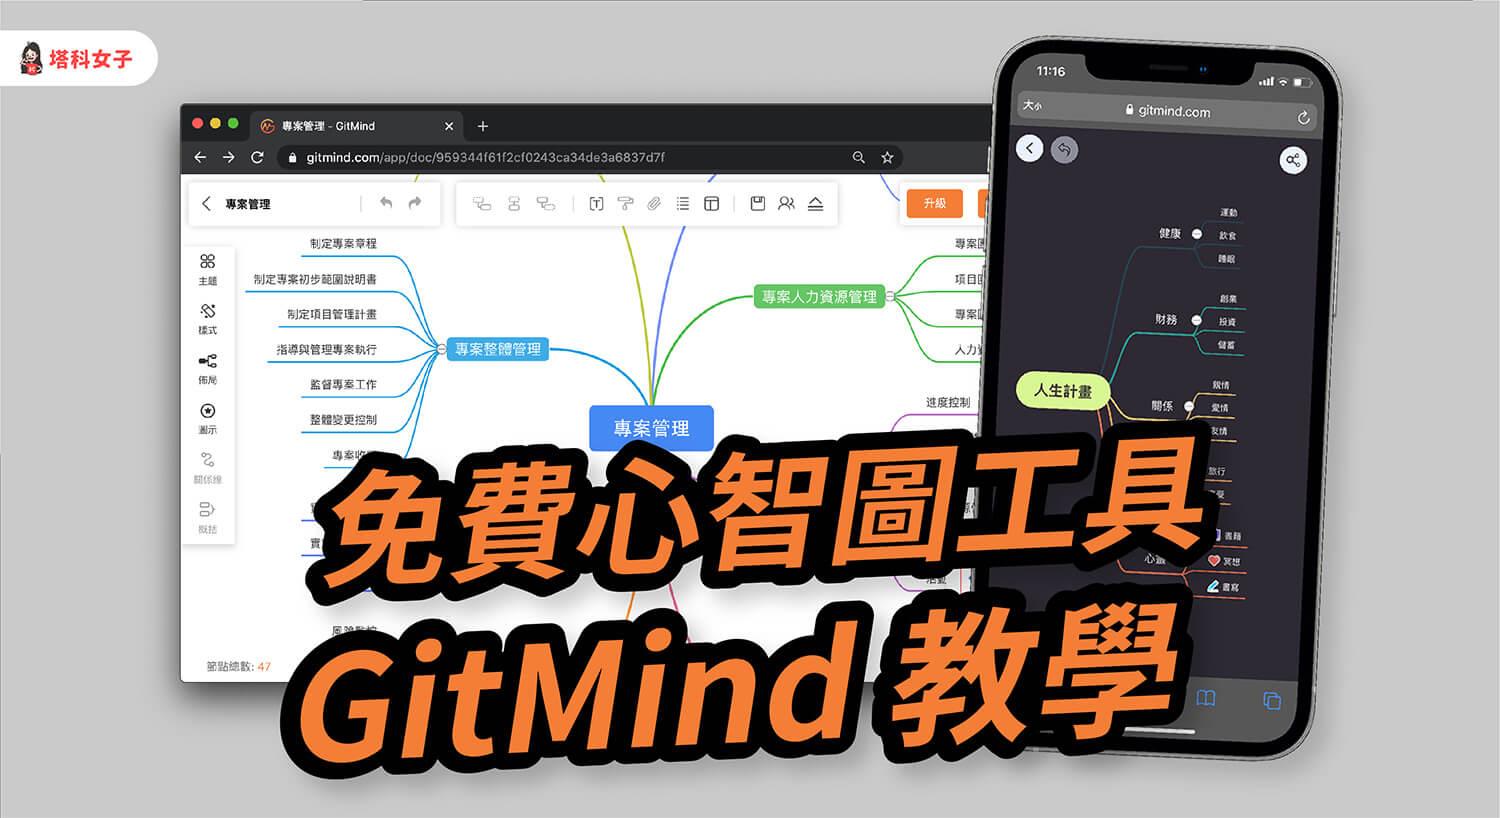 心智圖軟體 GitMind 讓你線上製作心智圖，提供數十款範例 (使用教學)